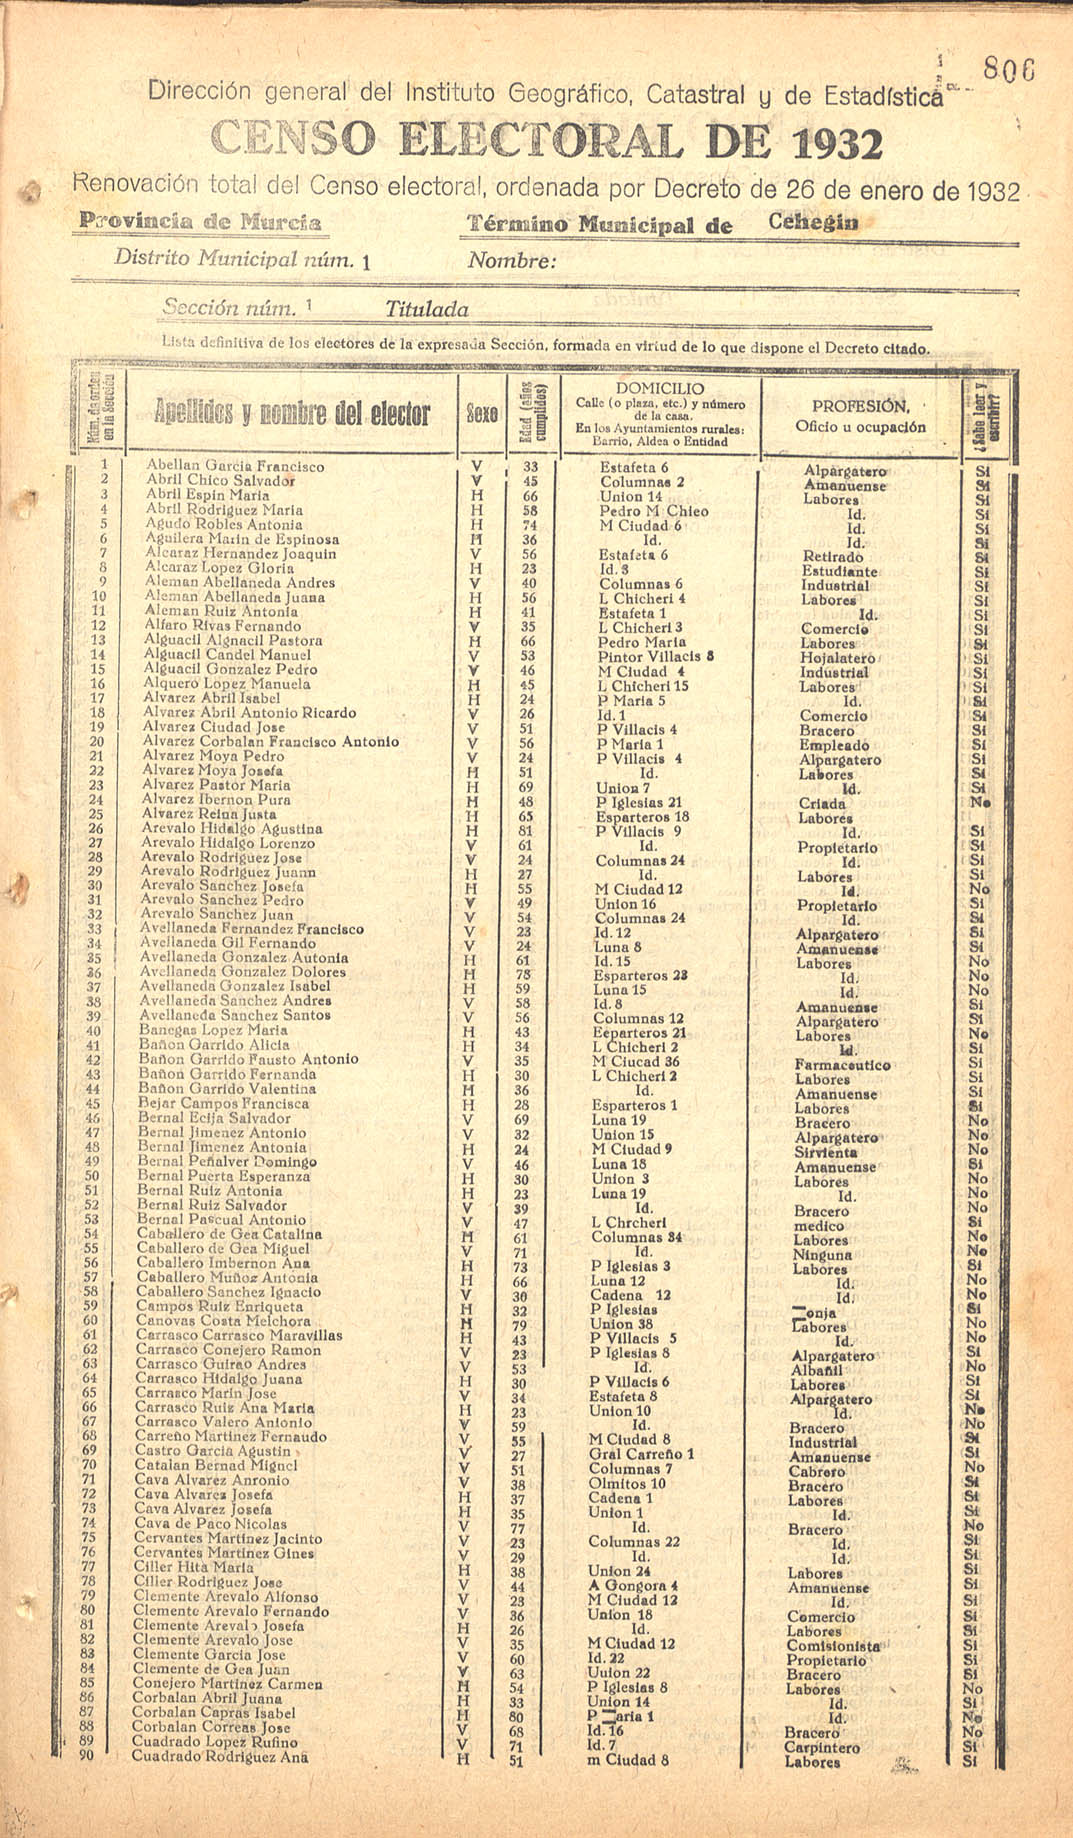 Censo electoral provincial de 1932. Listas definitivas de Cehegín, formadas en virtud del Decreto de 26 de enero de 1932.